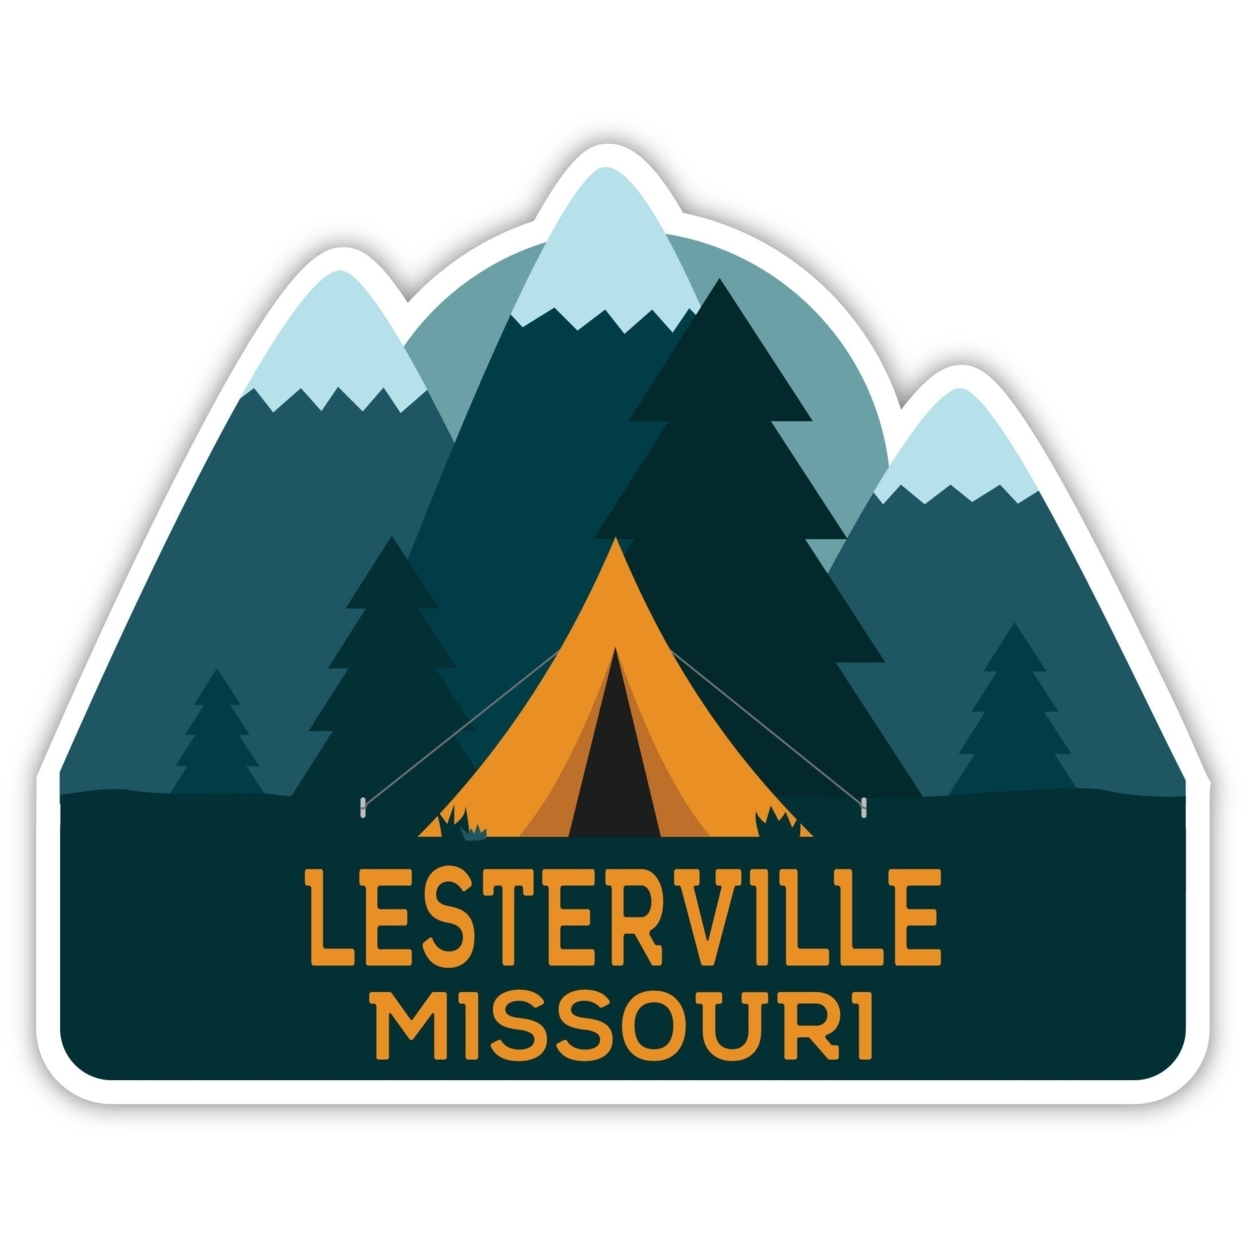 Lesterville Missouri Souvenir Decorative Stickers (Choose Theme And Size) - 4-Inch, Tent